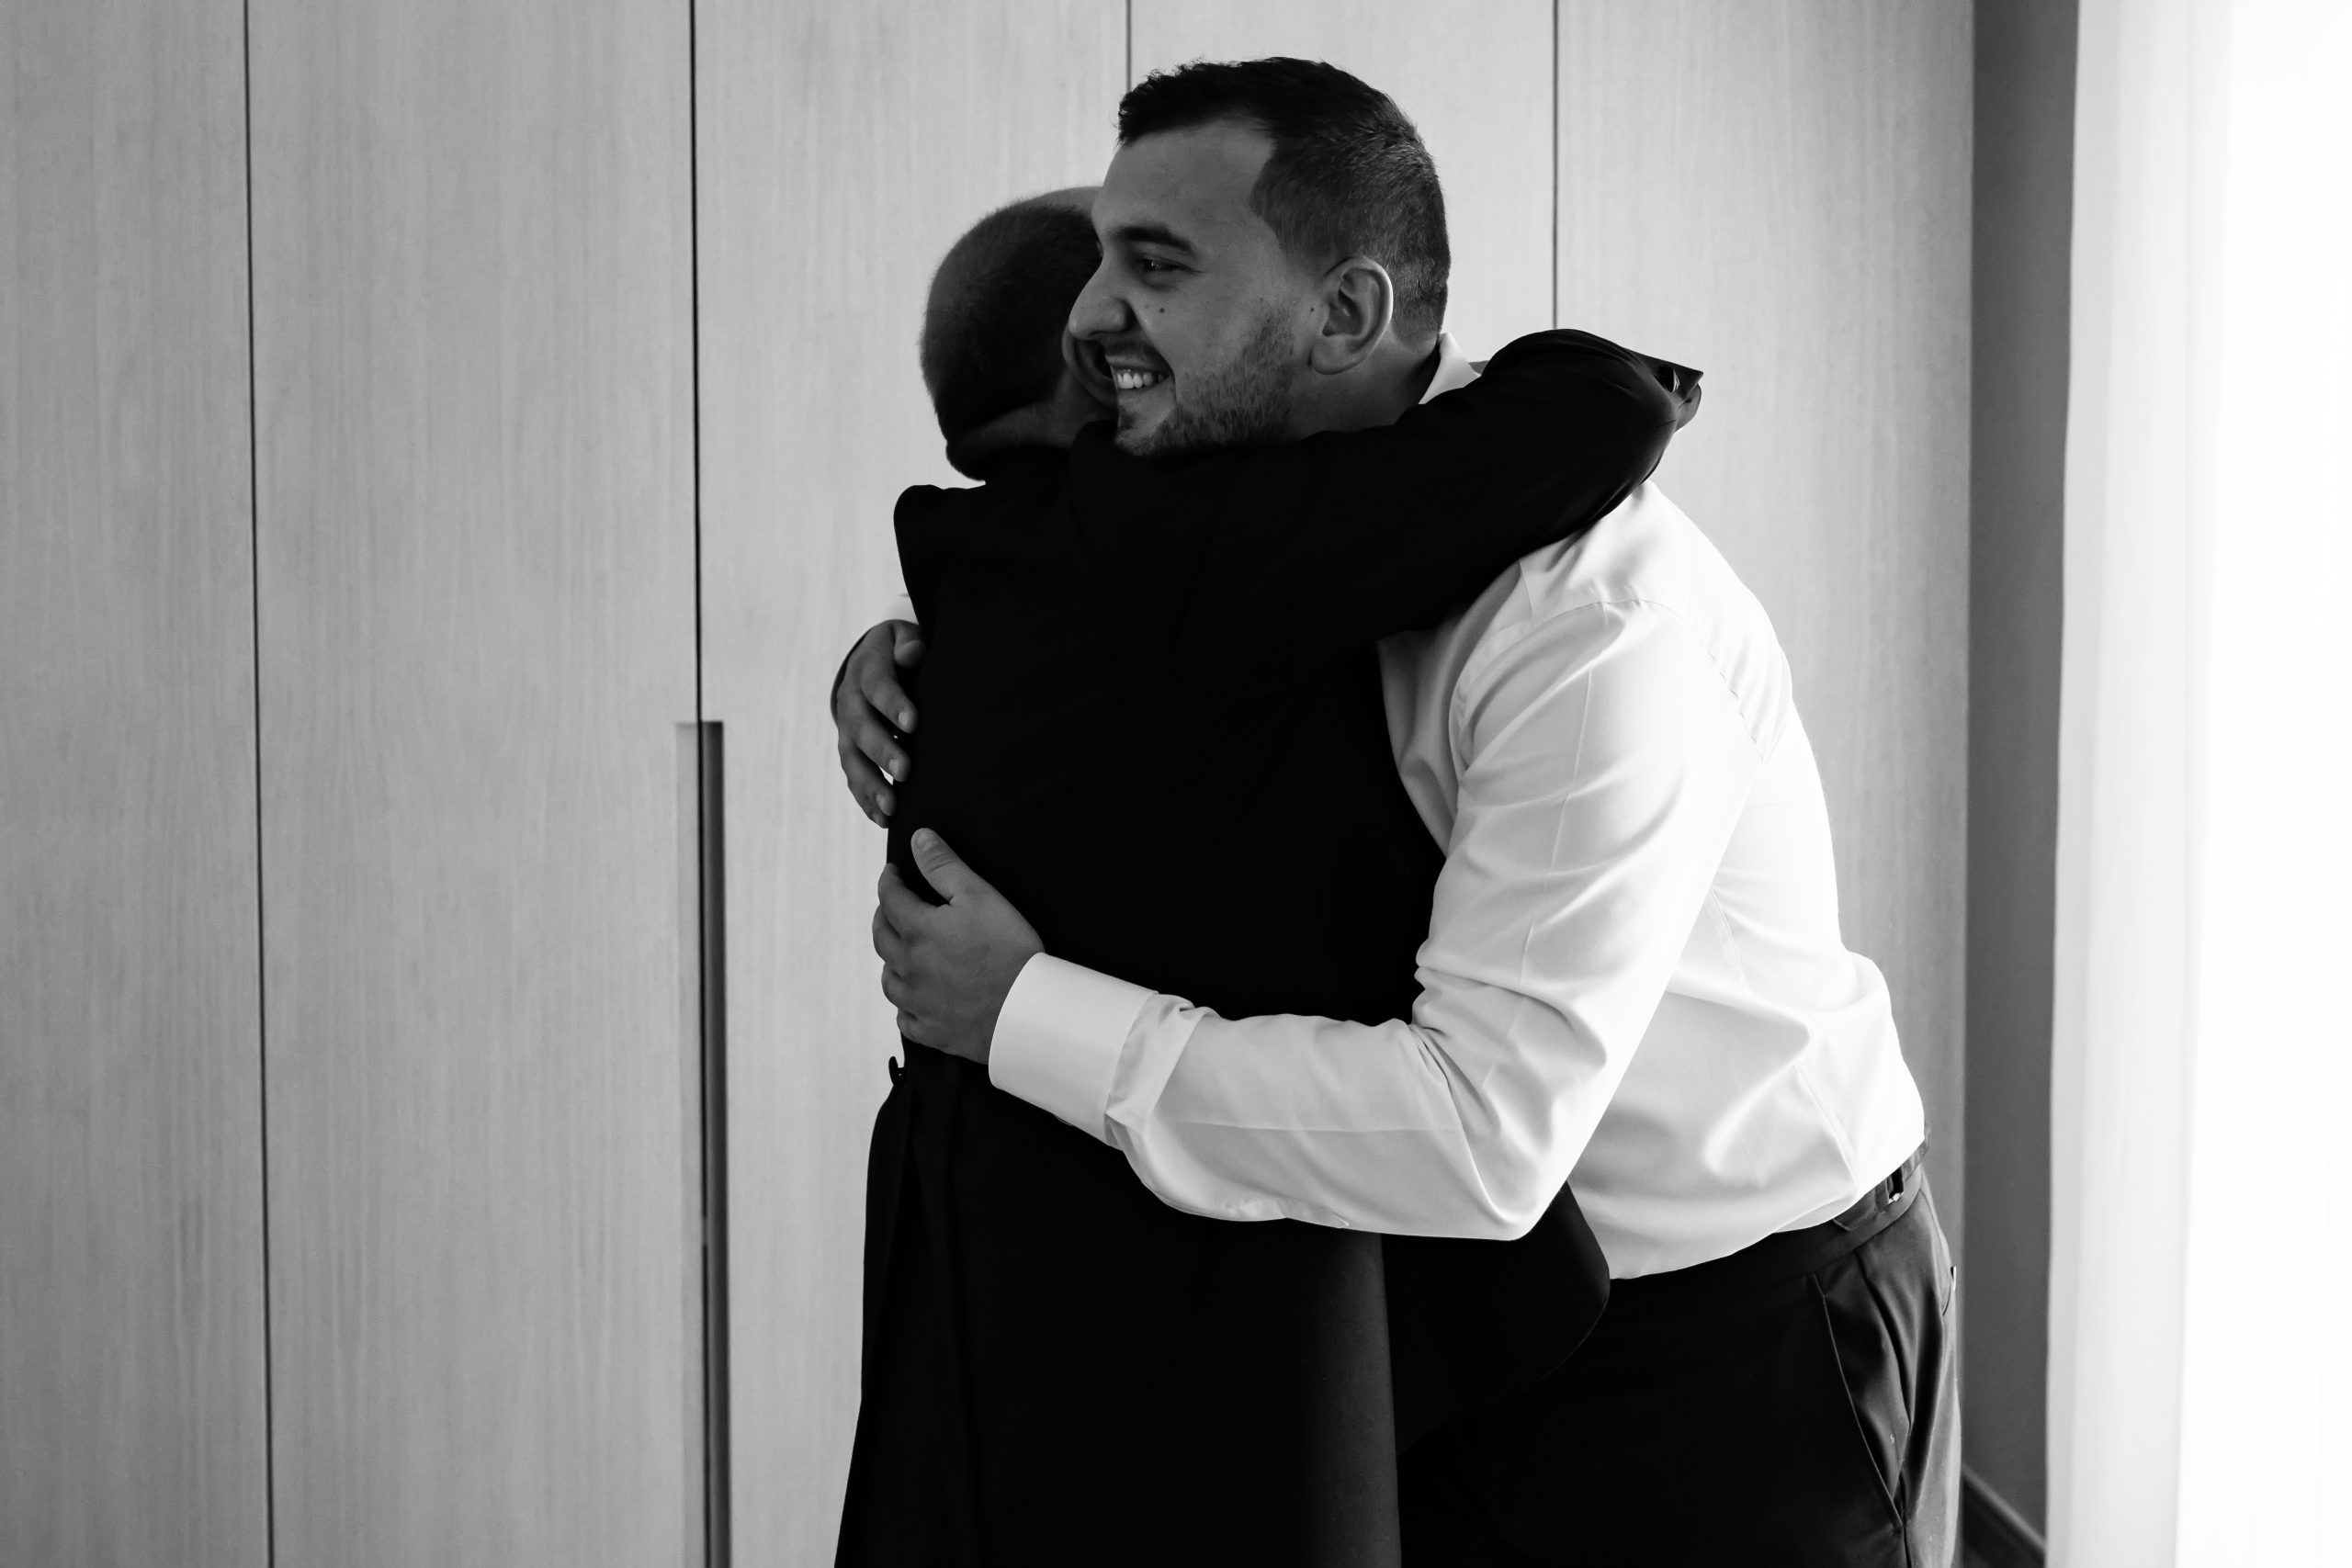 Fotografía en blanco y negro de unos hombres abrazándose